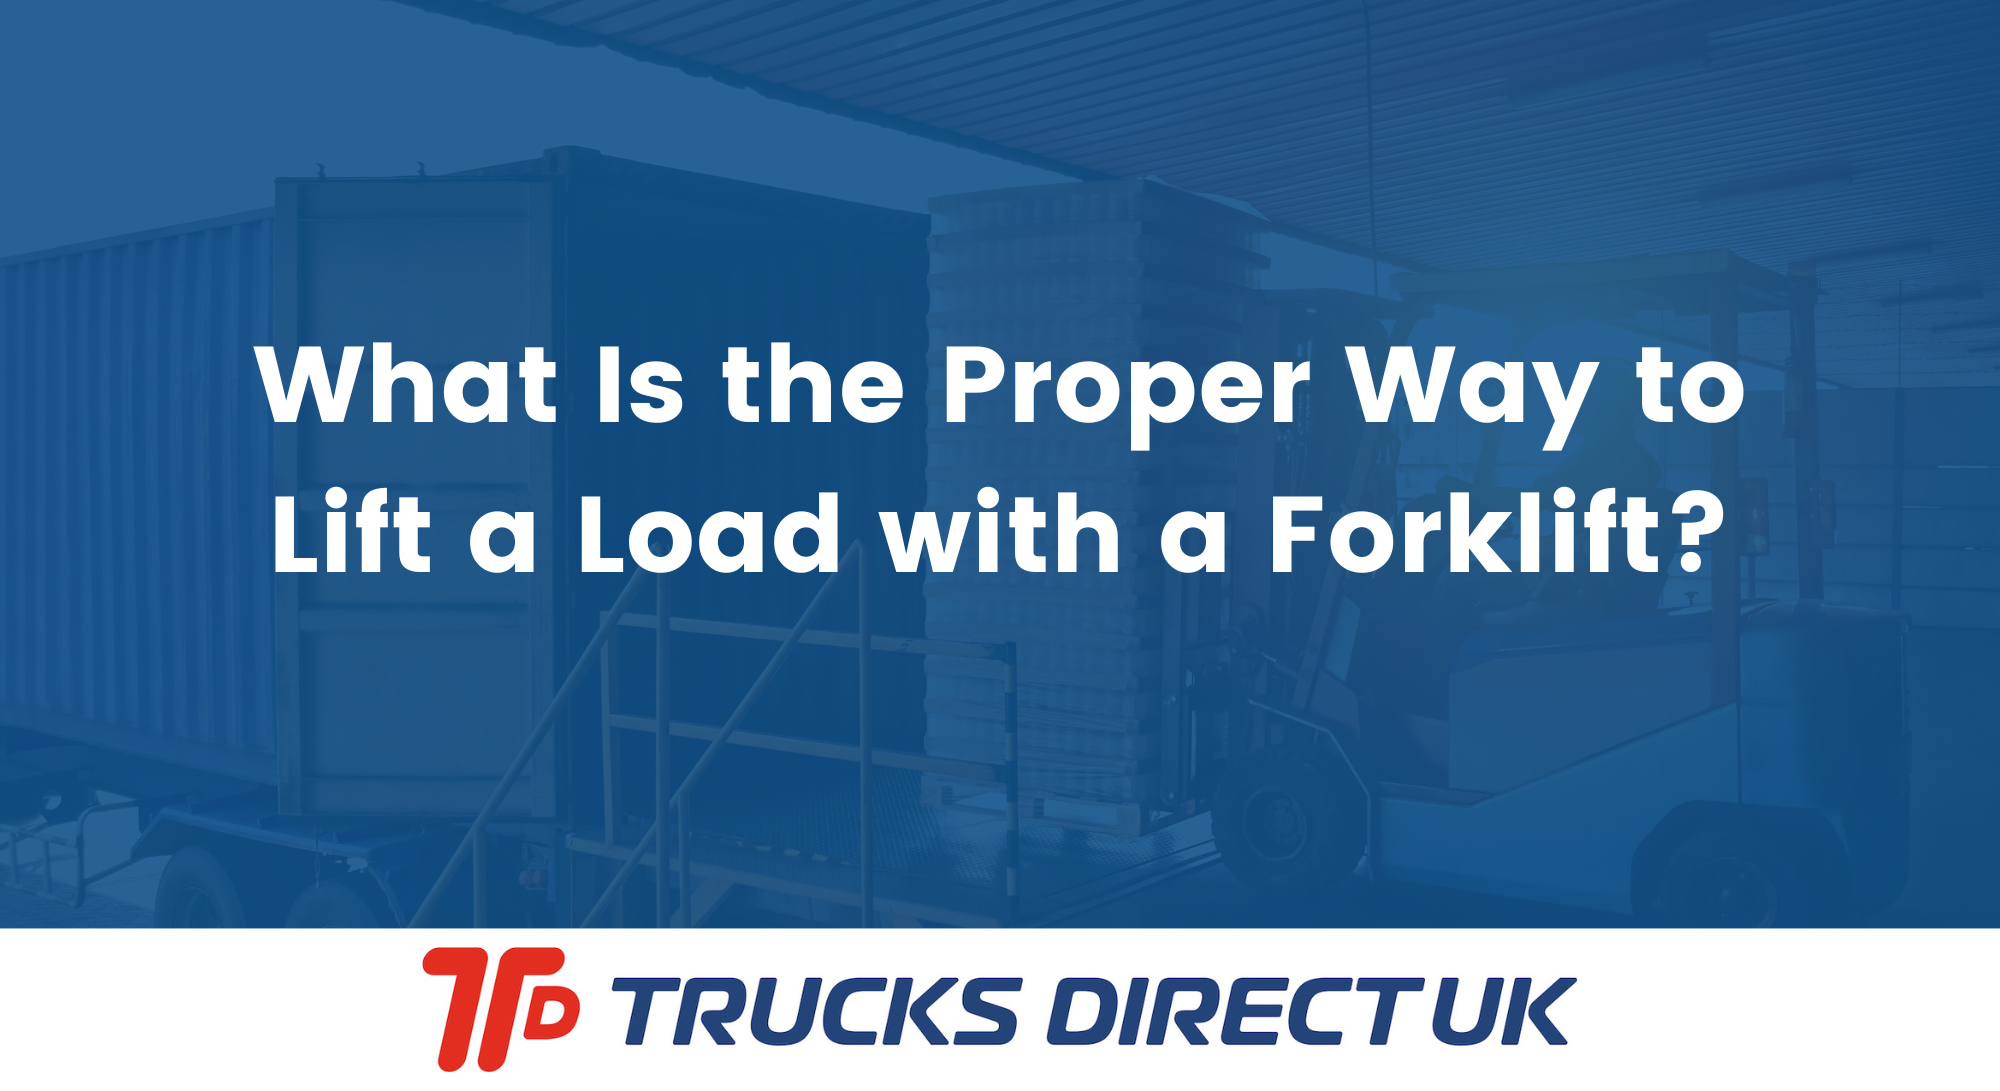 loading-forklift-trucks-direct